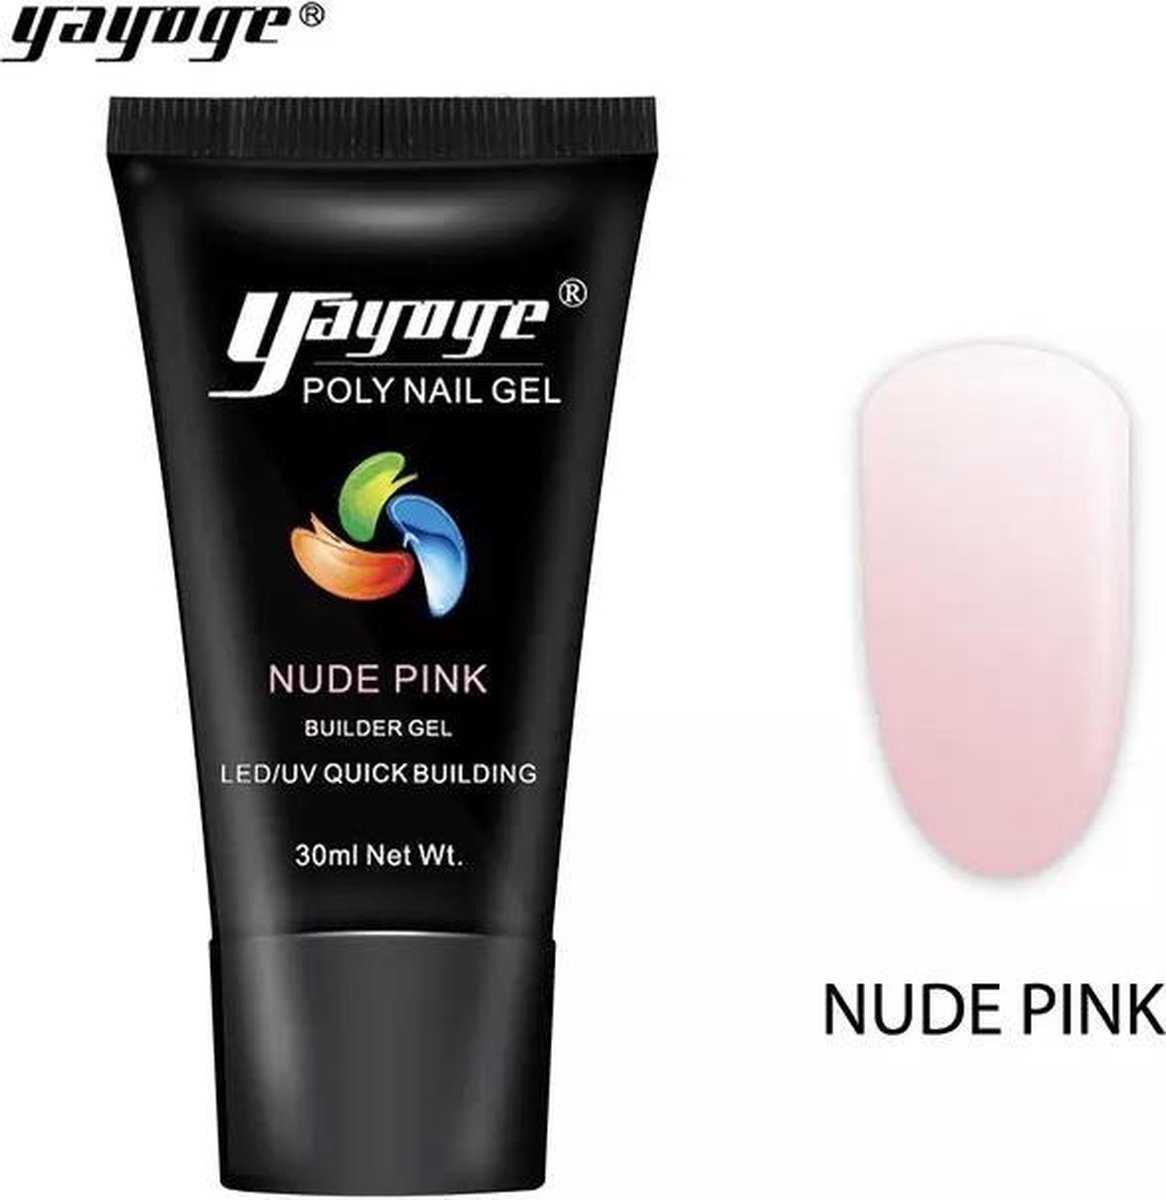 Yayoge polygel nude pink 30 gram